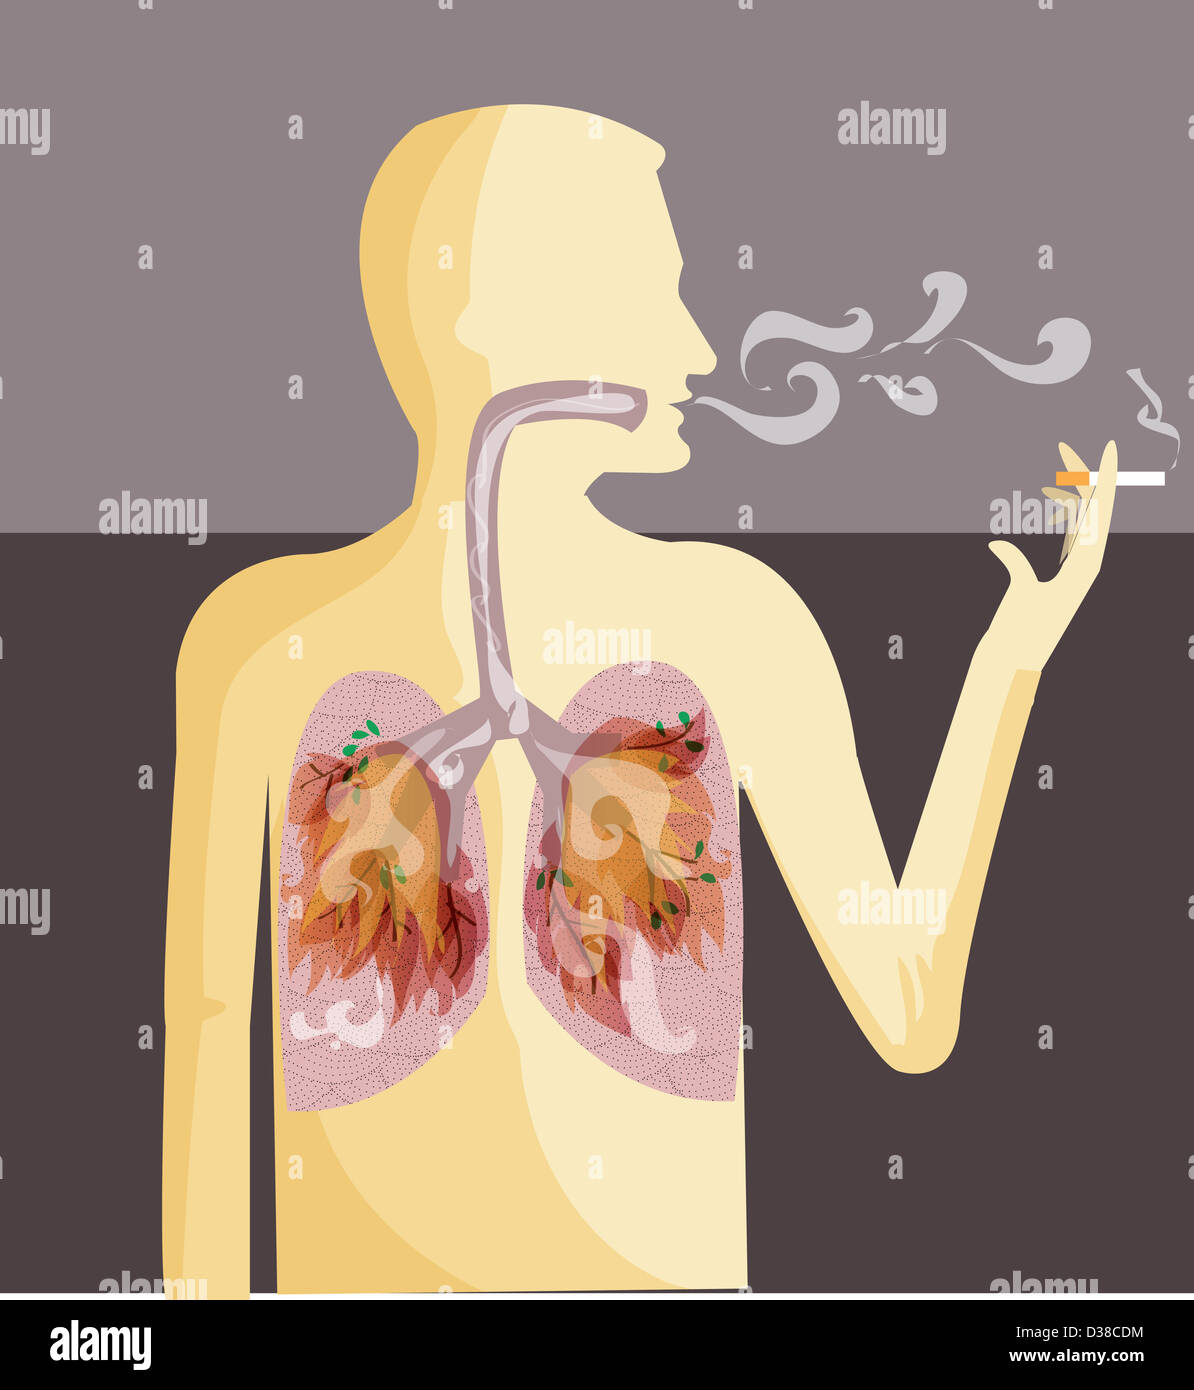 Image d'illustration de la représentation humaine cigarette illustrant le cancer du poumon Banque D'Images